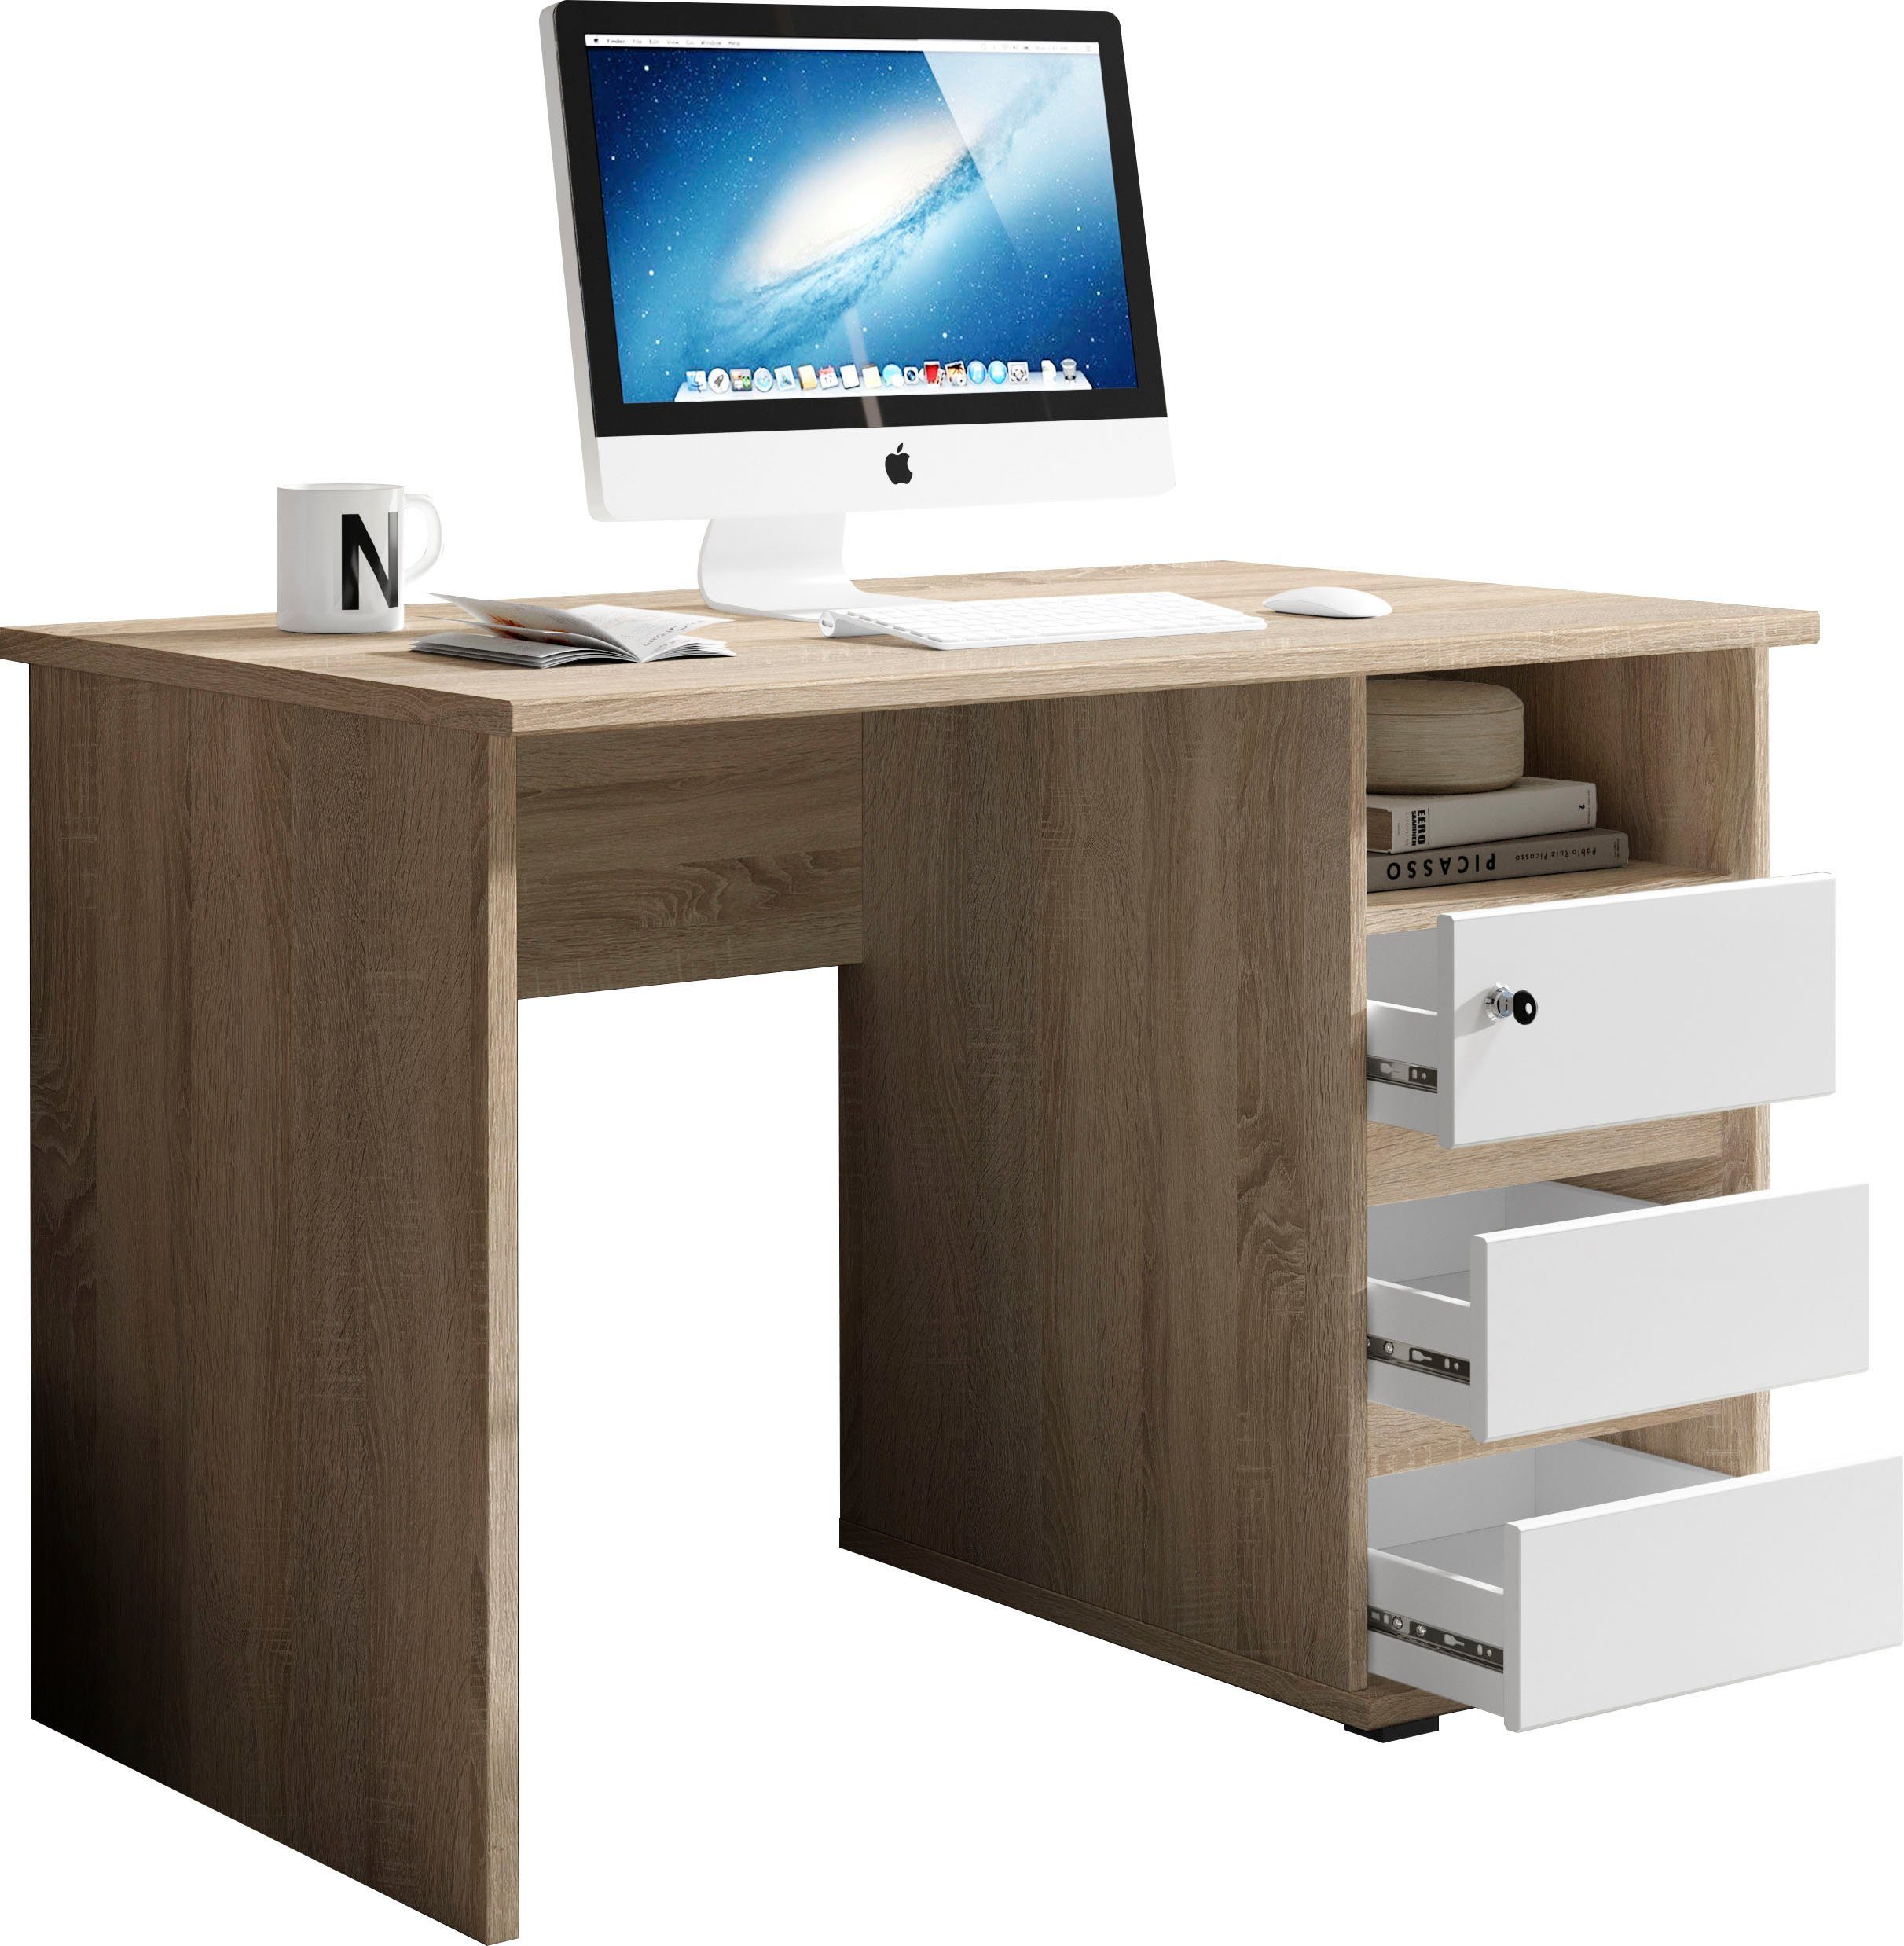 BEGA OFFICE Schreibtisch Primus 1, mit Schubkasten abschließbar in 3 Farbausführungen eiche sonoma/weiß